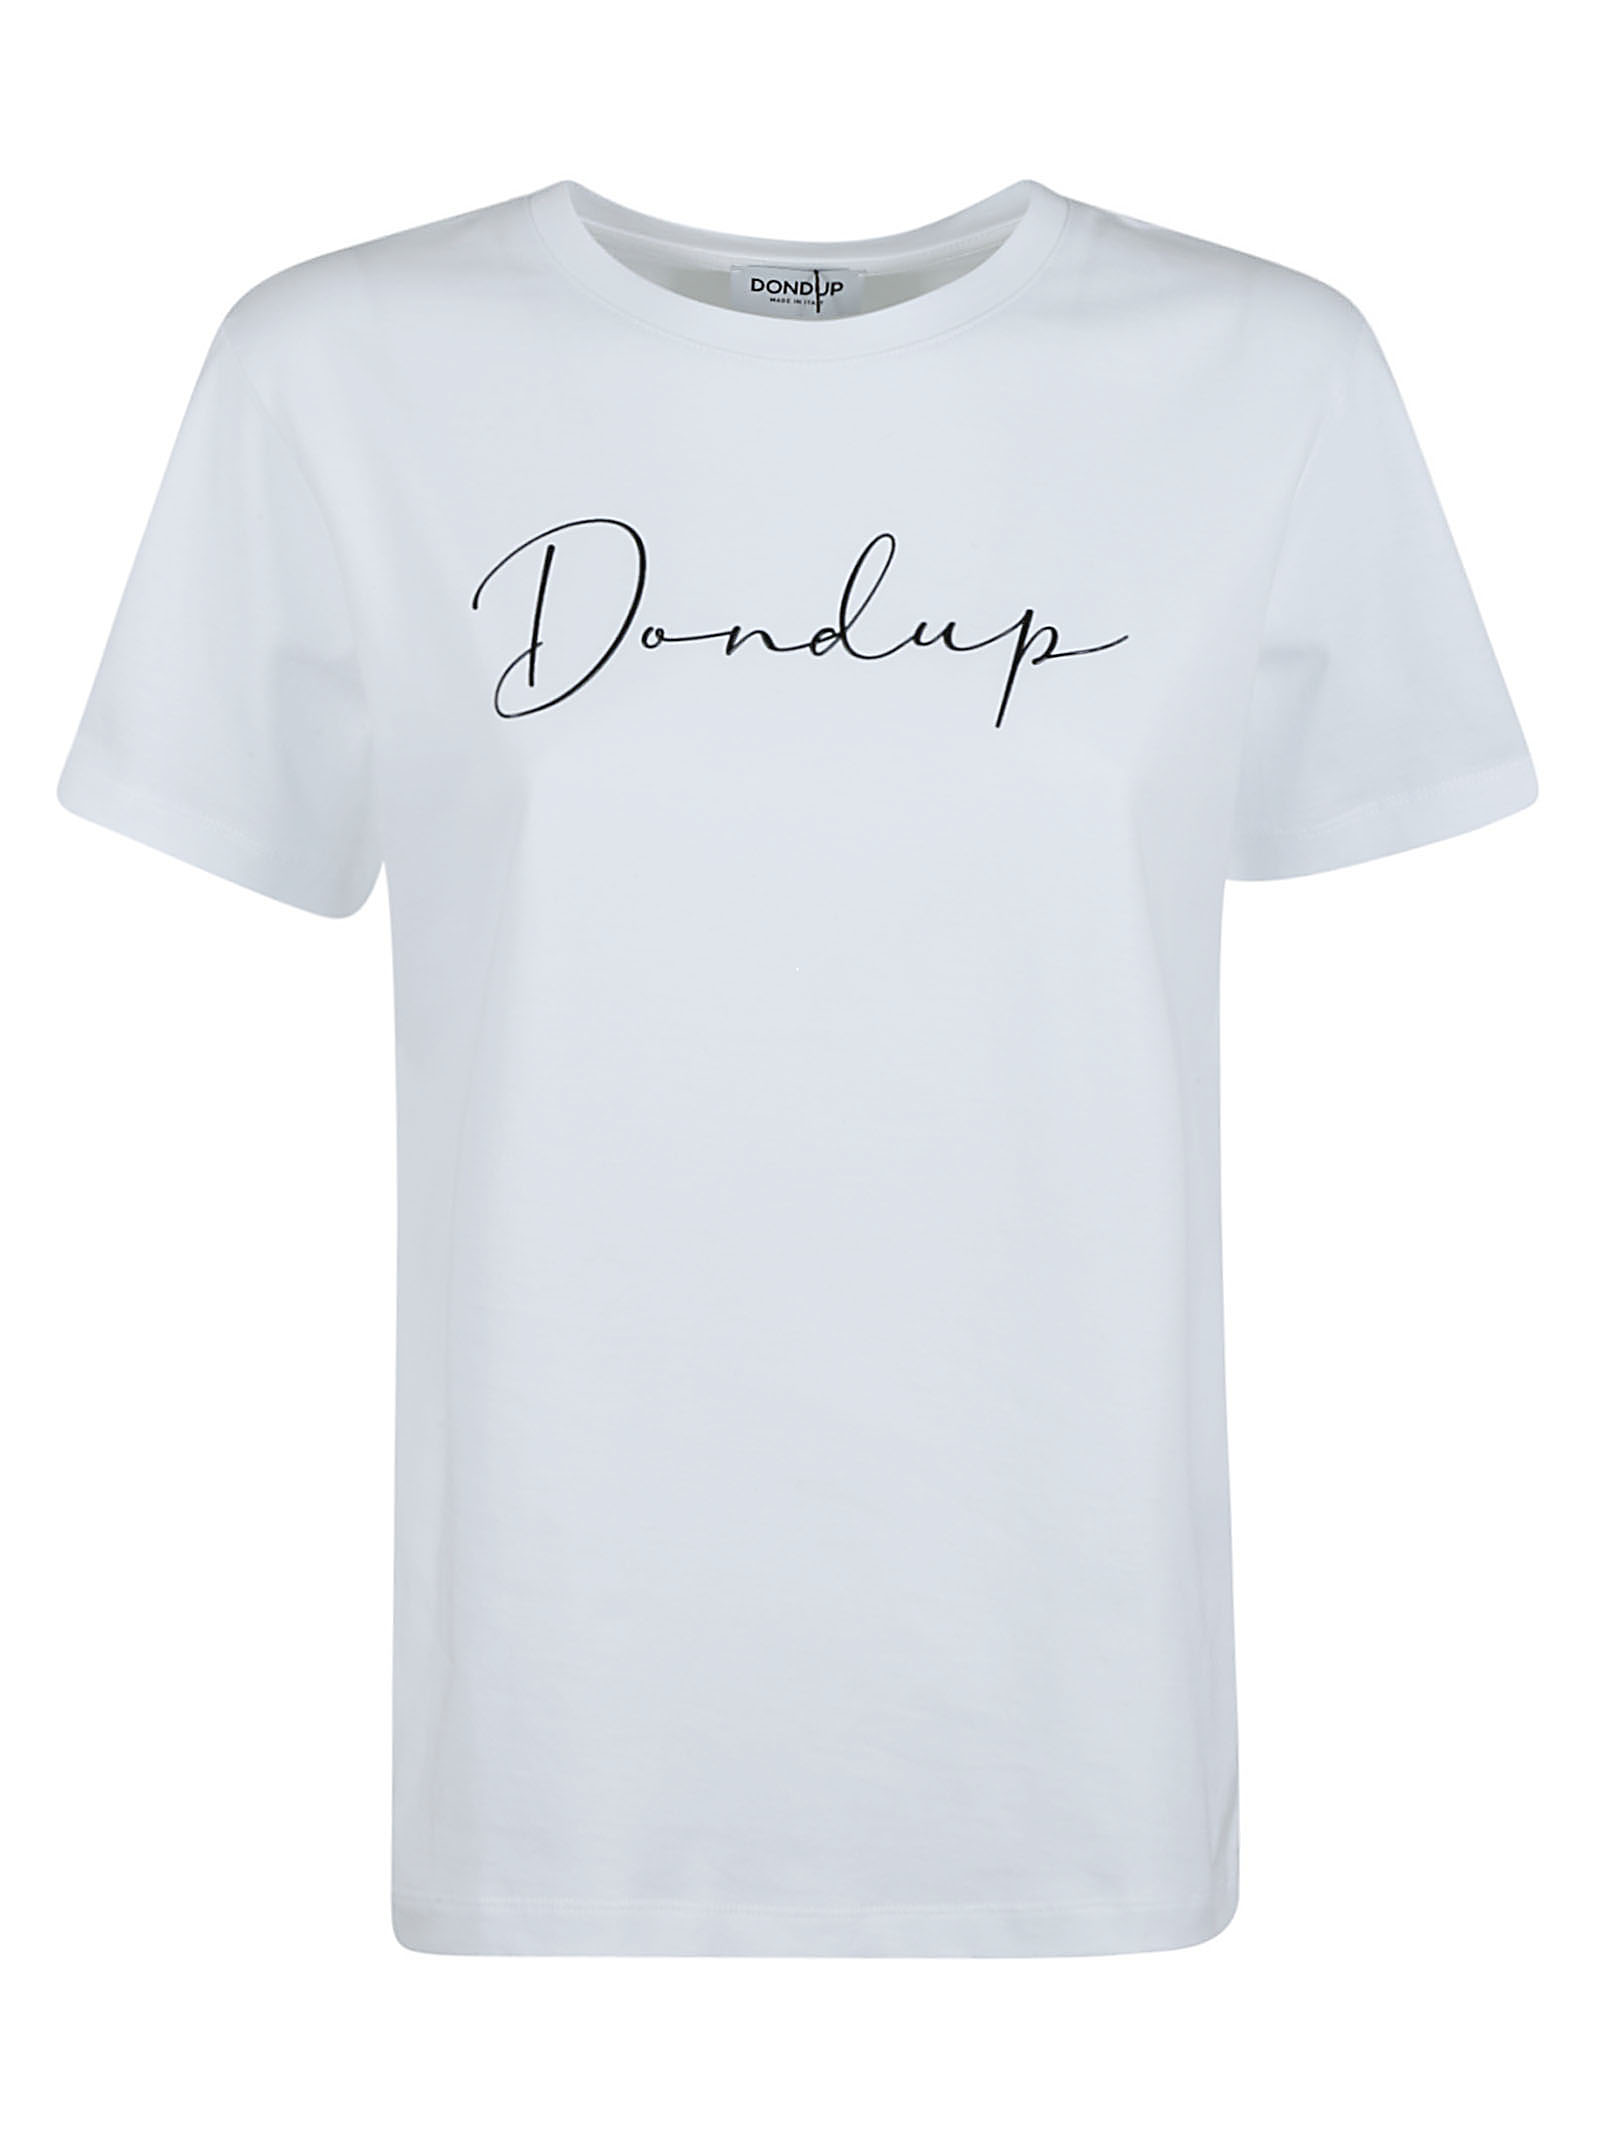 Dondup T-Shirt Michele Inzerillo | Moda Lusso Donna e Uomo Boutique online Inzerillo.it